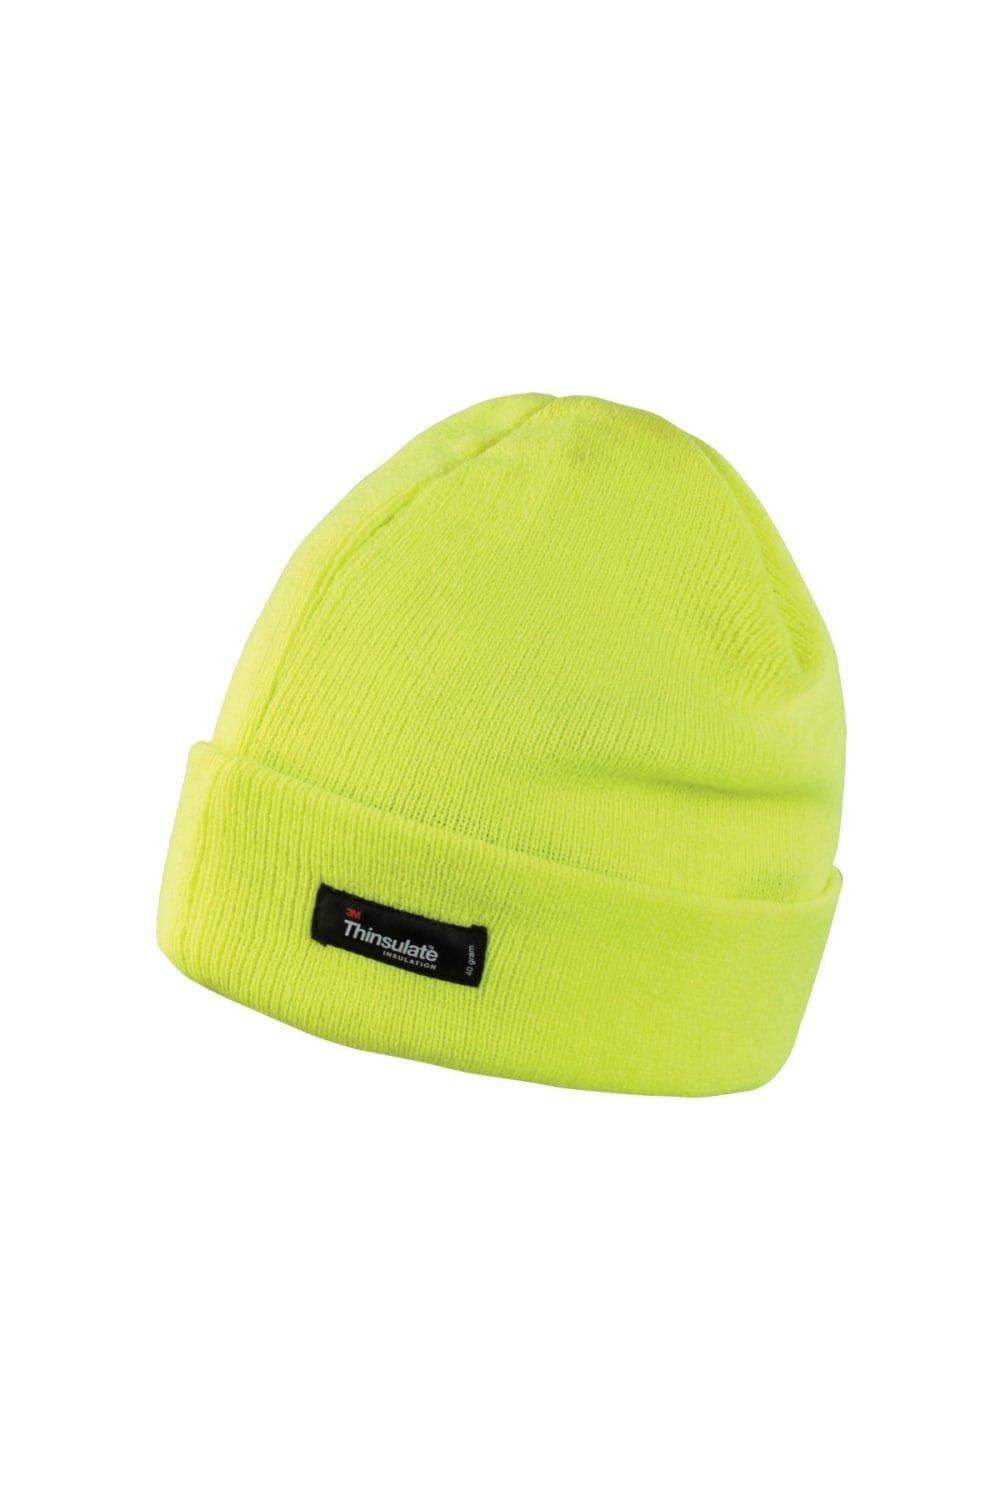 цена Легкая термозимняя шапка Thinsulate (3M, 40 г) (2 шт. в упаковке) Result, желтый